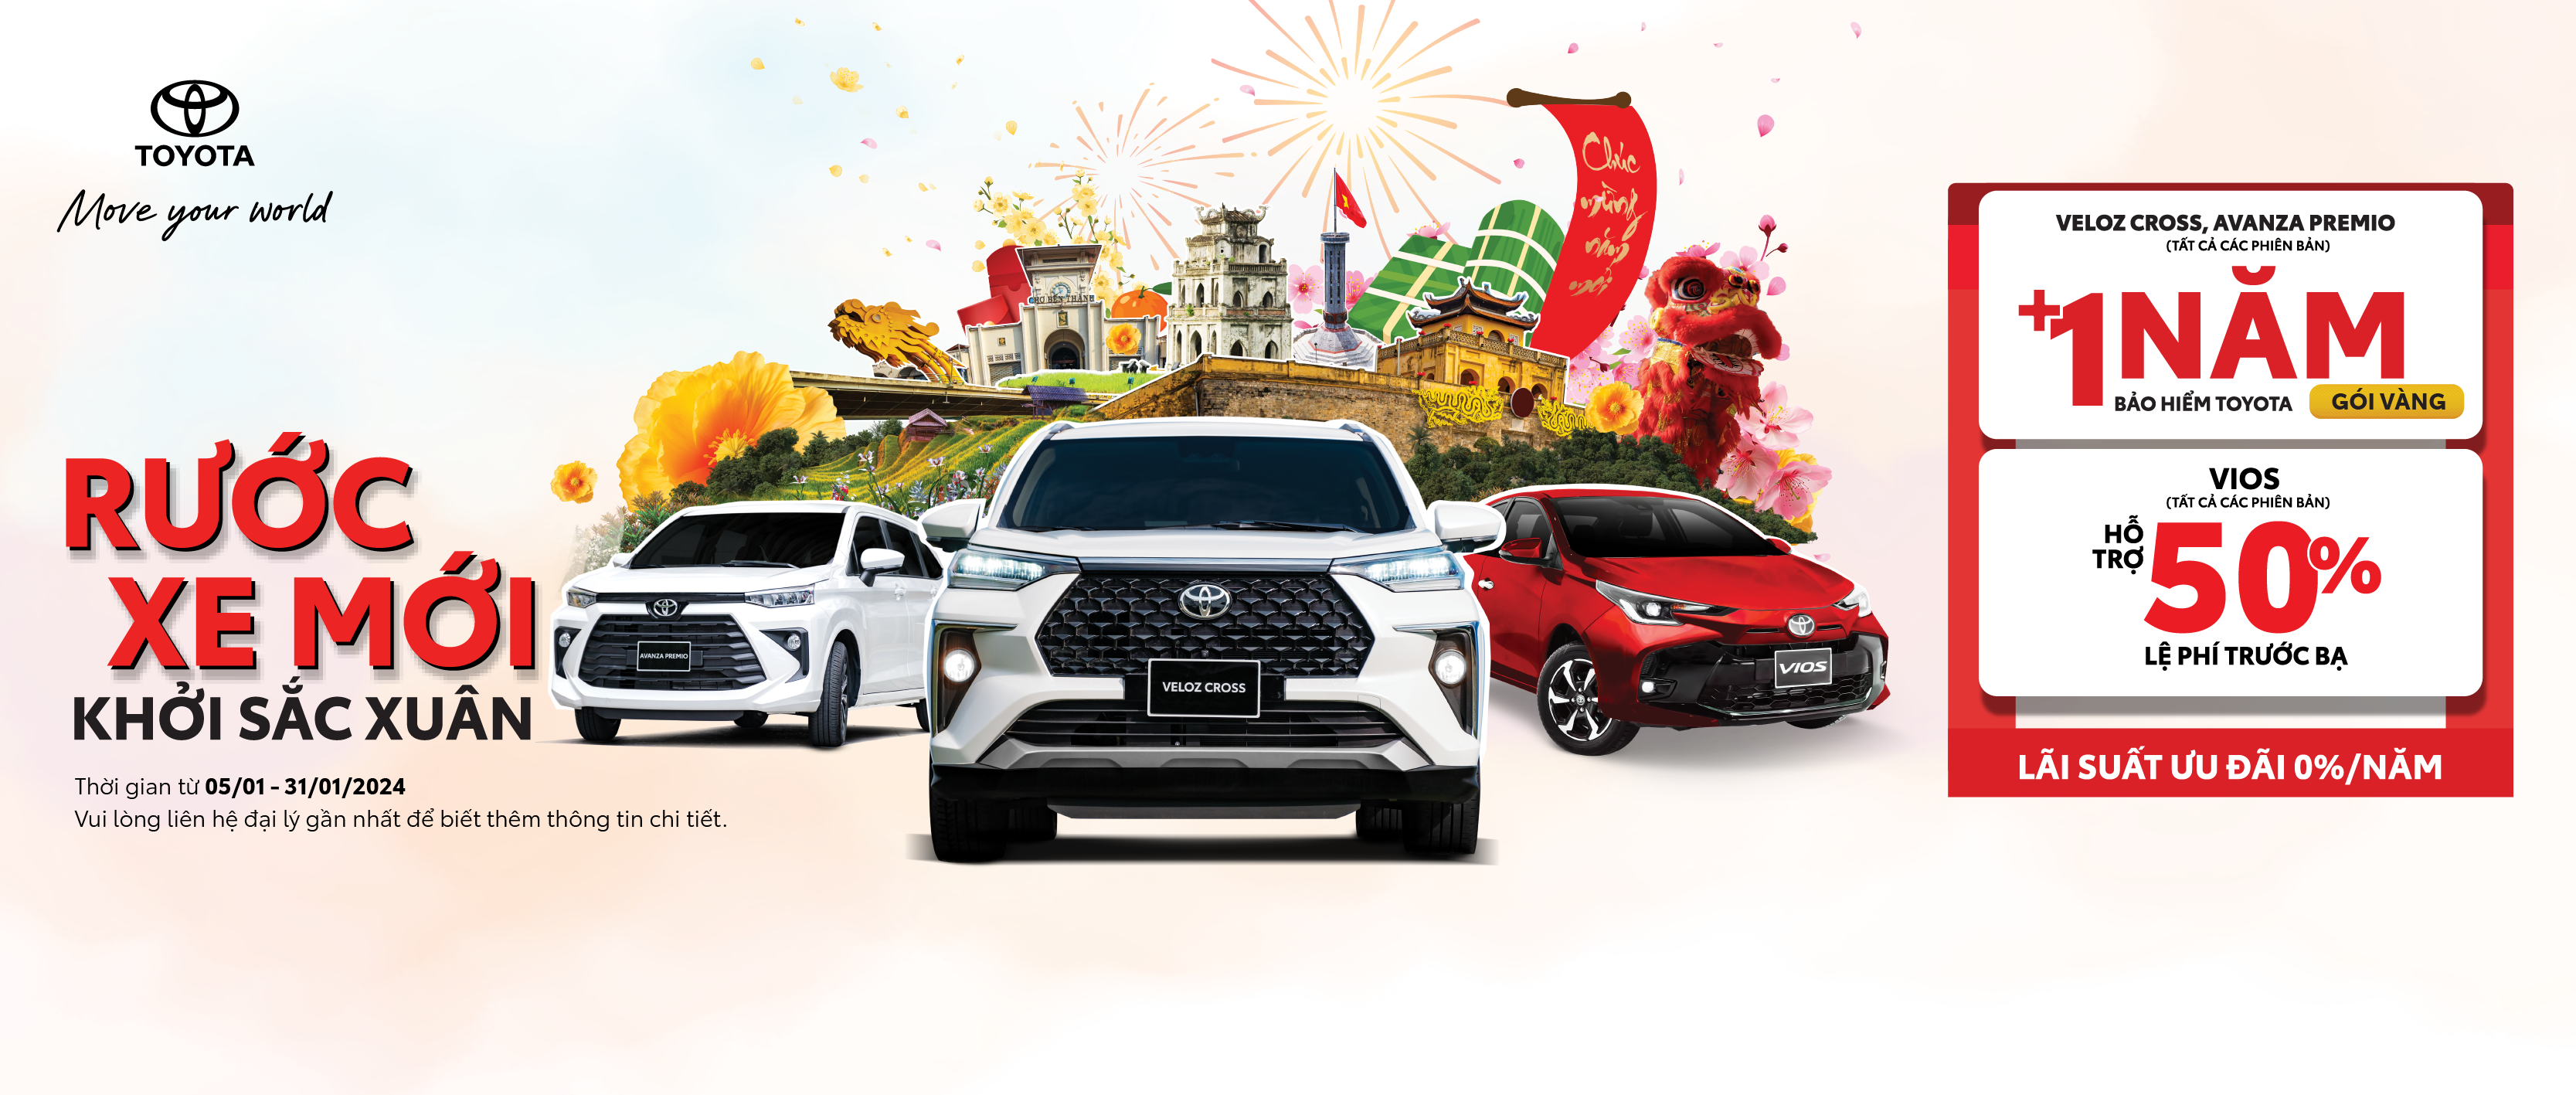 Toyota và hệ thống Đại lý tiếp tục khuyến mại hấp dẫn  cho các mẫu xe Toyota trong tháng 01/2024